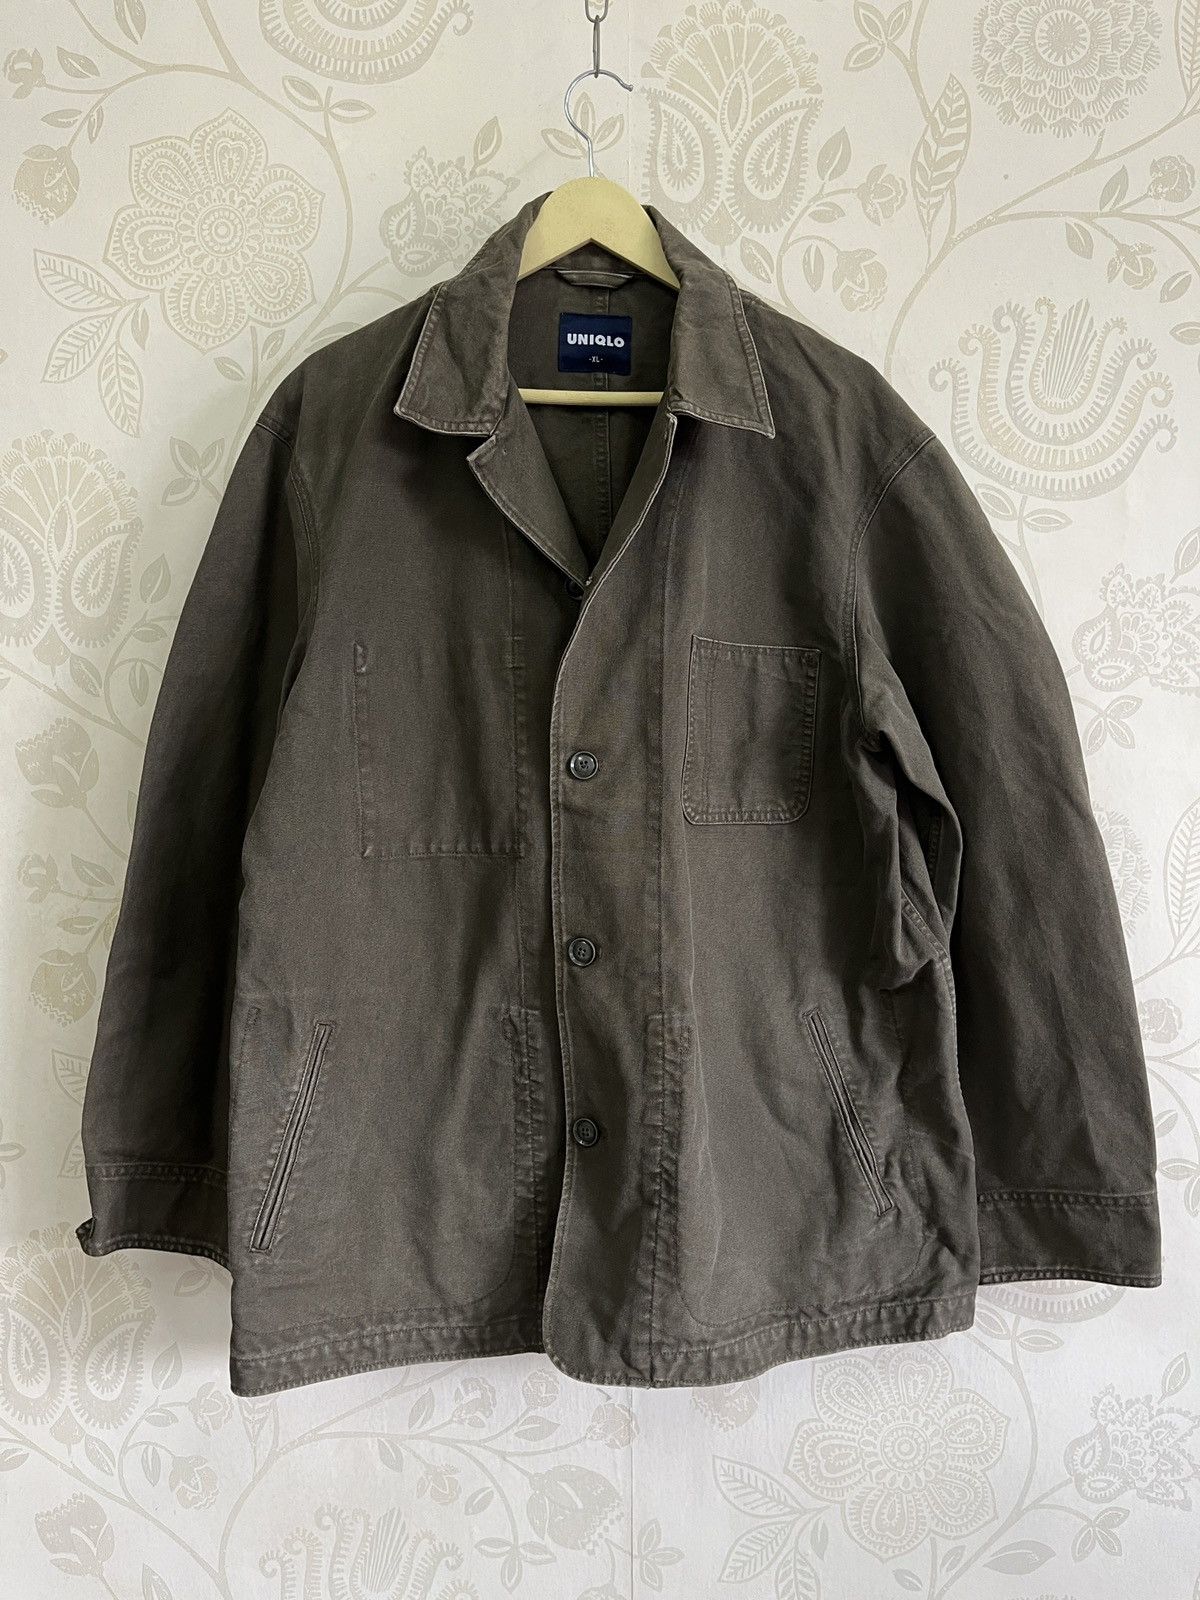 Uniqlo Chore Jacket Japan Size XL - 3